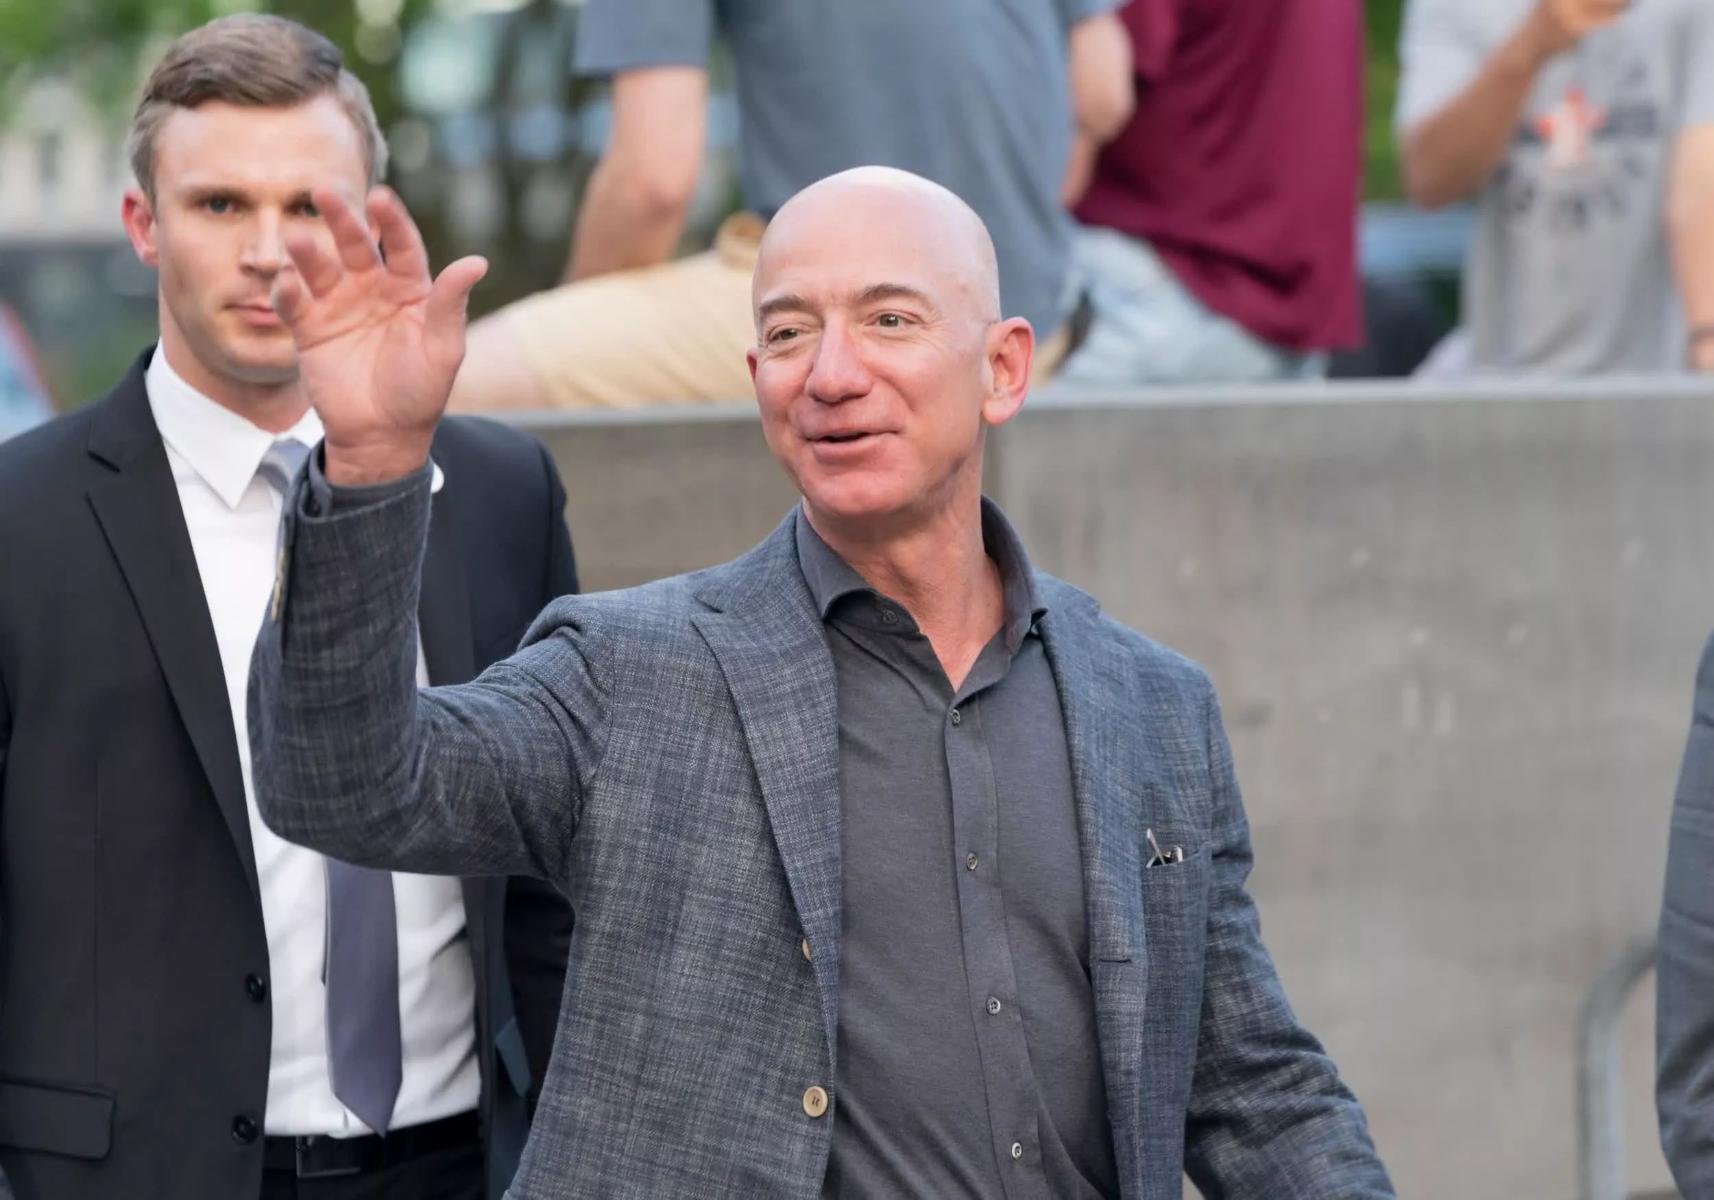 Джефф Безос перестал быть гендиректором Amazon